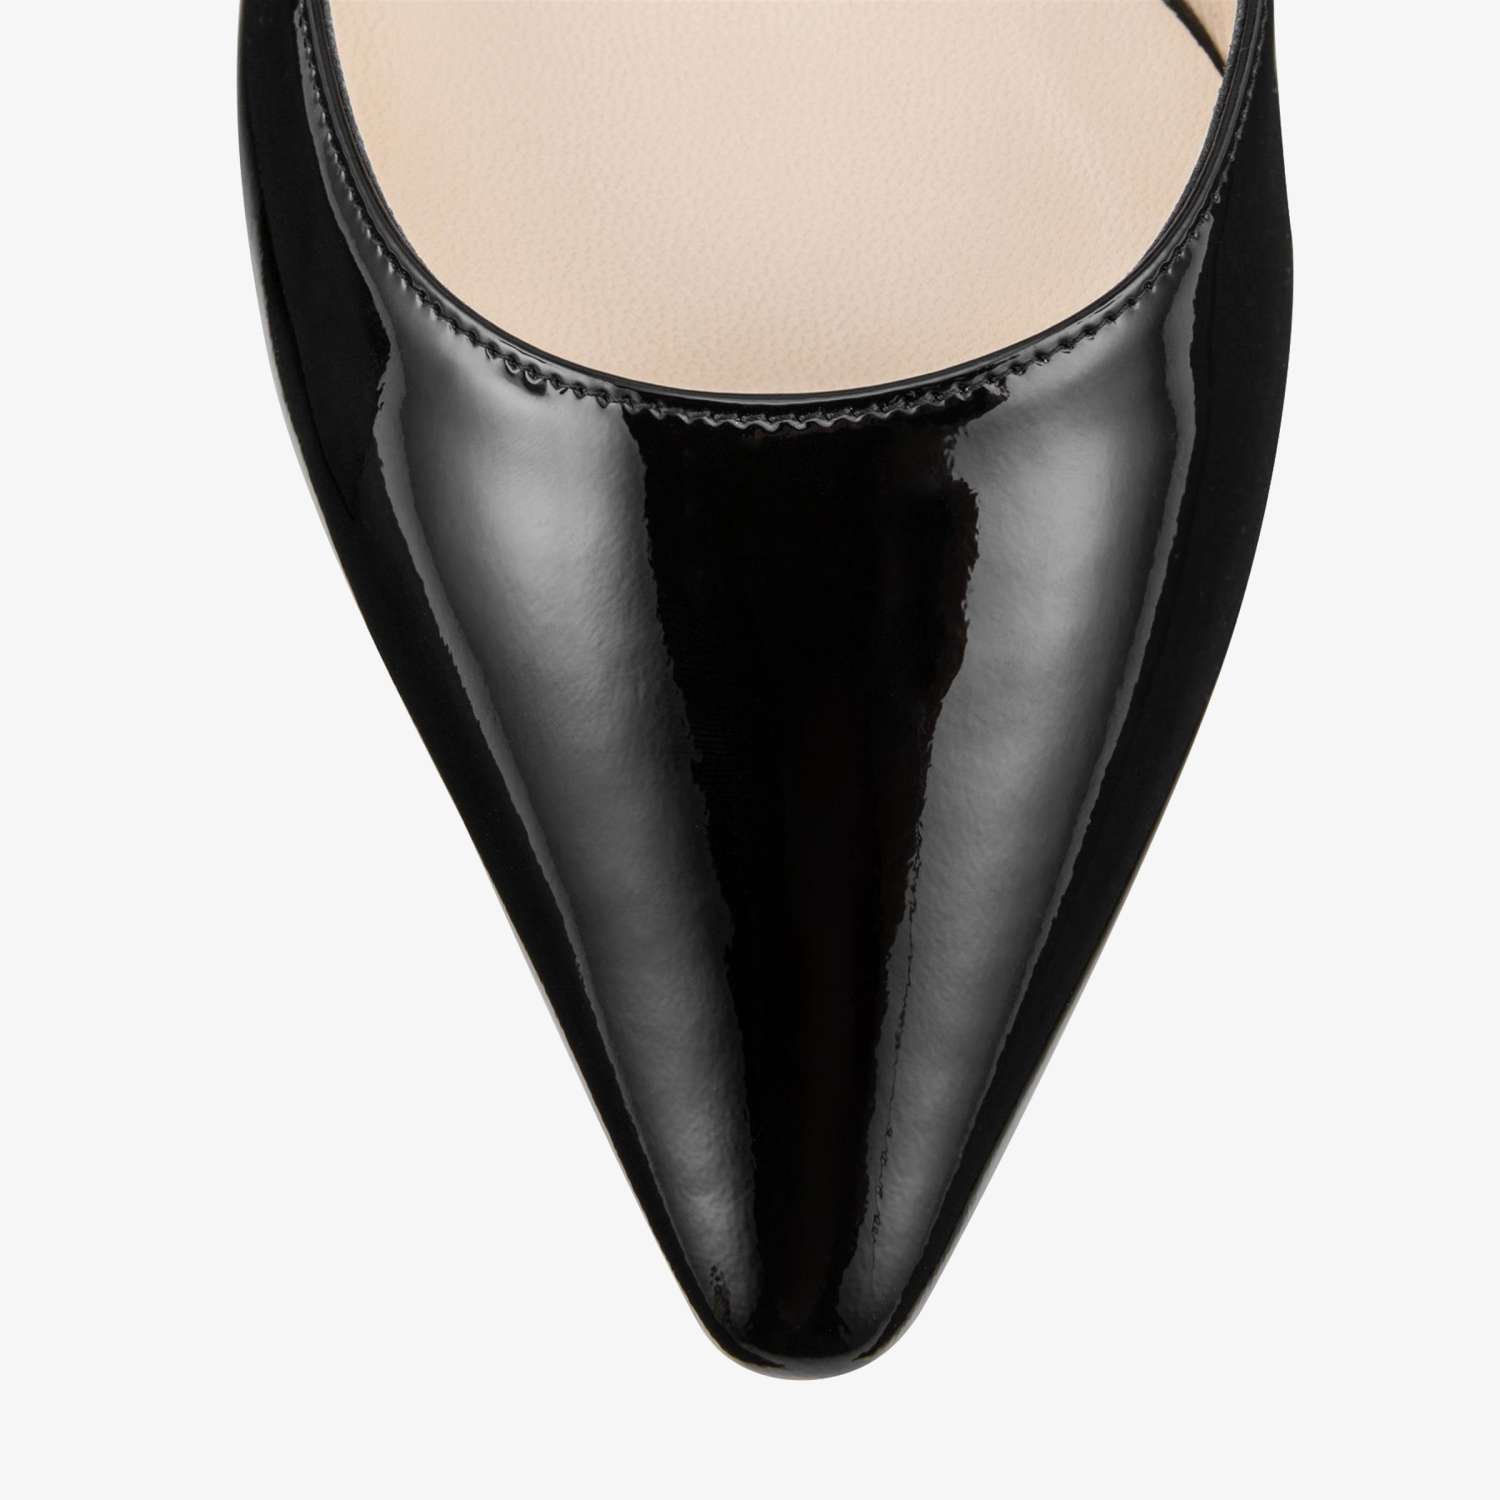 黑色经典女士尖头鞋 克里斯提·鲁布托夏季潮流搭配女鞋 - 七七奢侈品